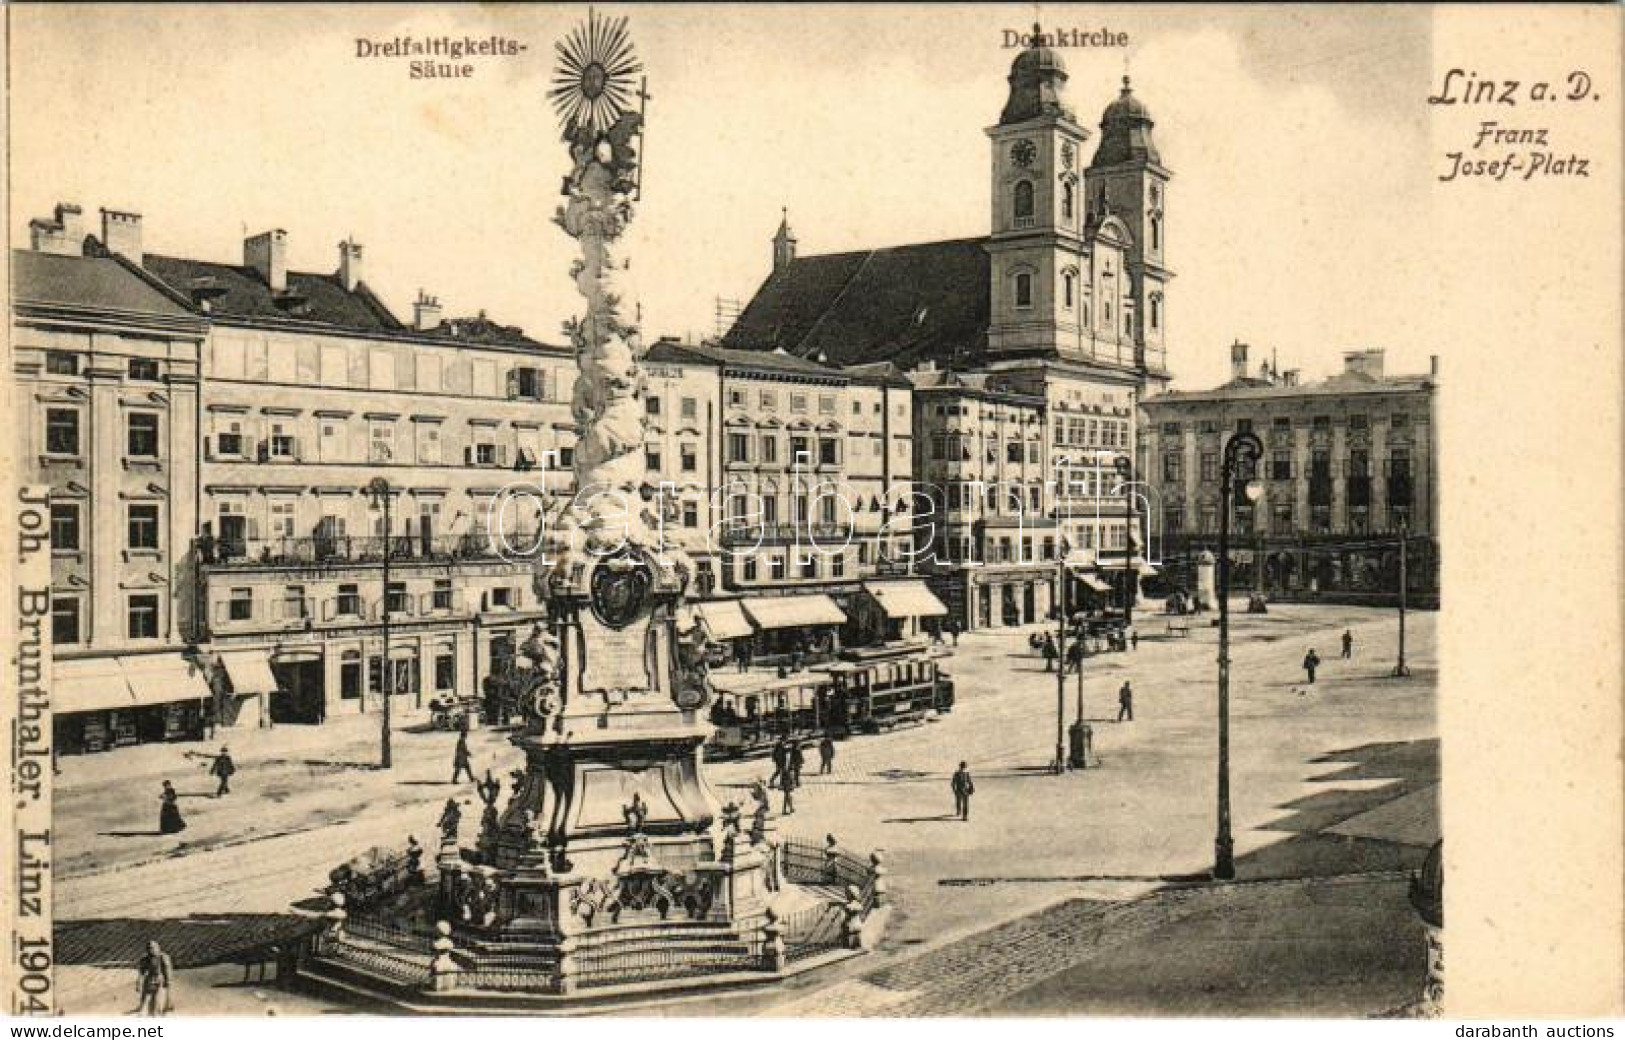 ** T2 Linz, Franz Josef-Platz, Dreifaltigkeits-Säule, Domkirche / Square, Holy Trinity Statue, Church, Tram, Shops / Fer - Sin Clasificación